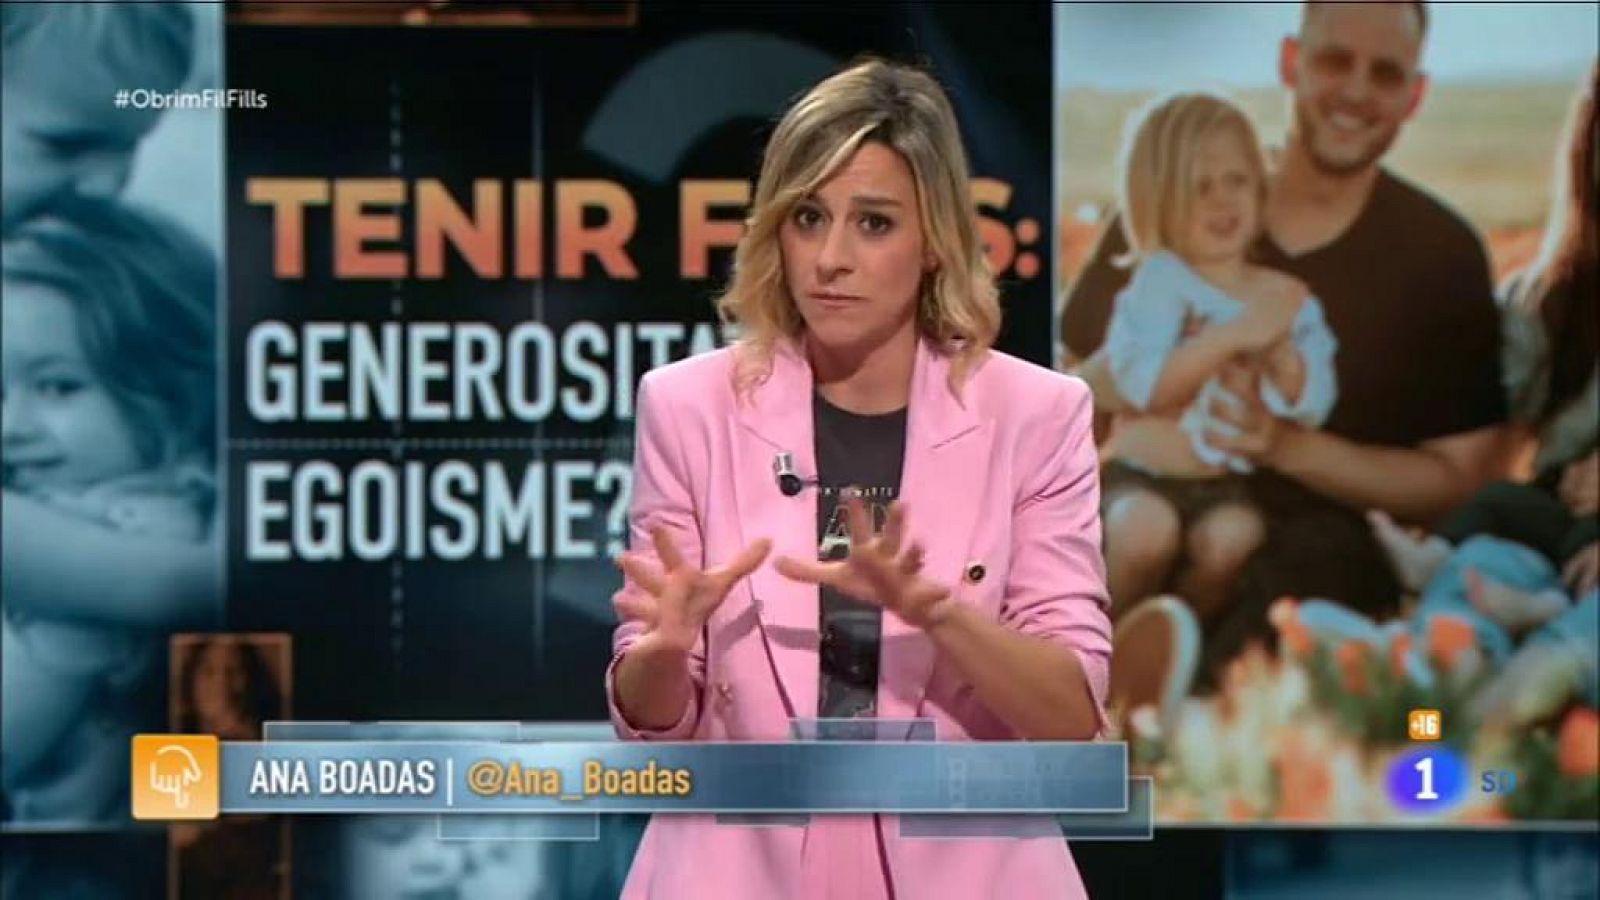 Obrim fil - Informe de l'Ana Boadas sobre tenir fills - RTVE Catalunya